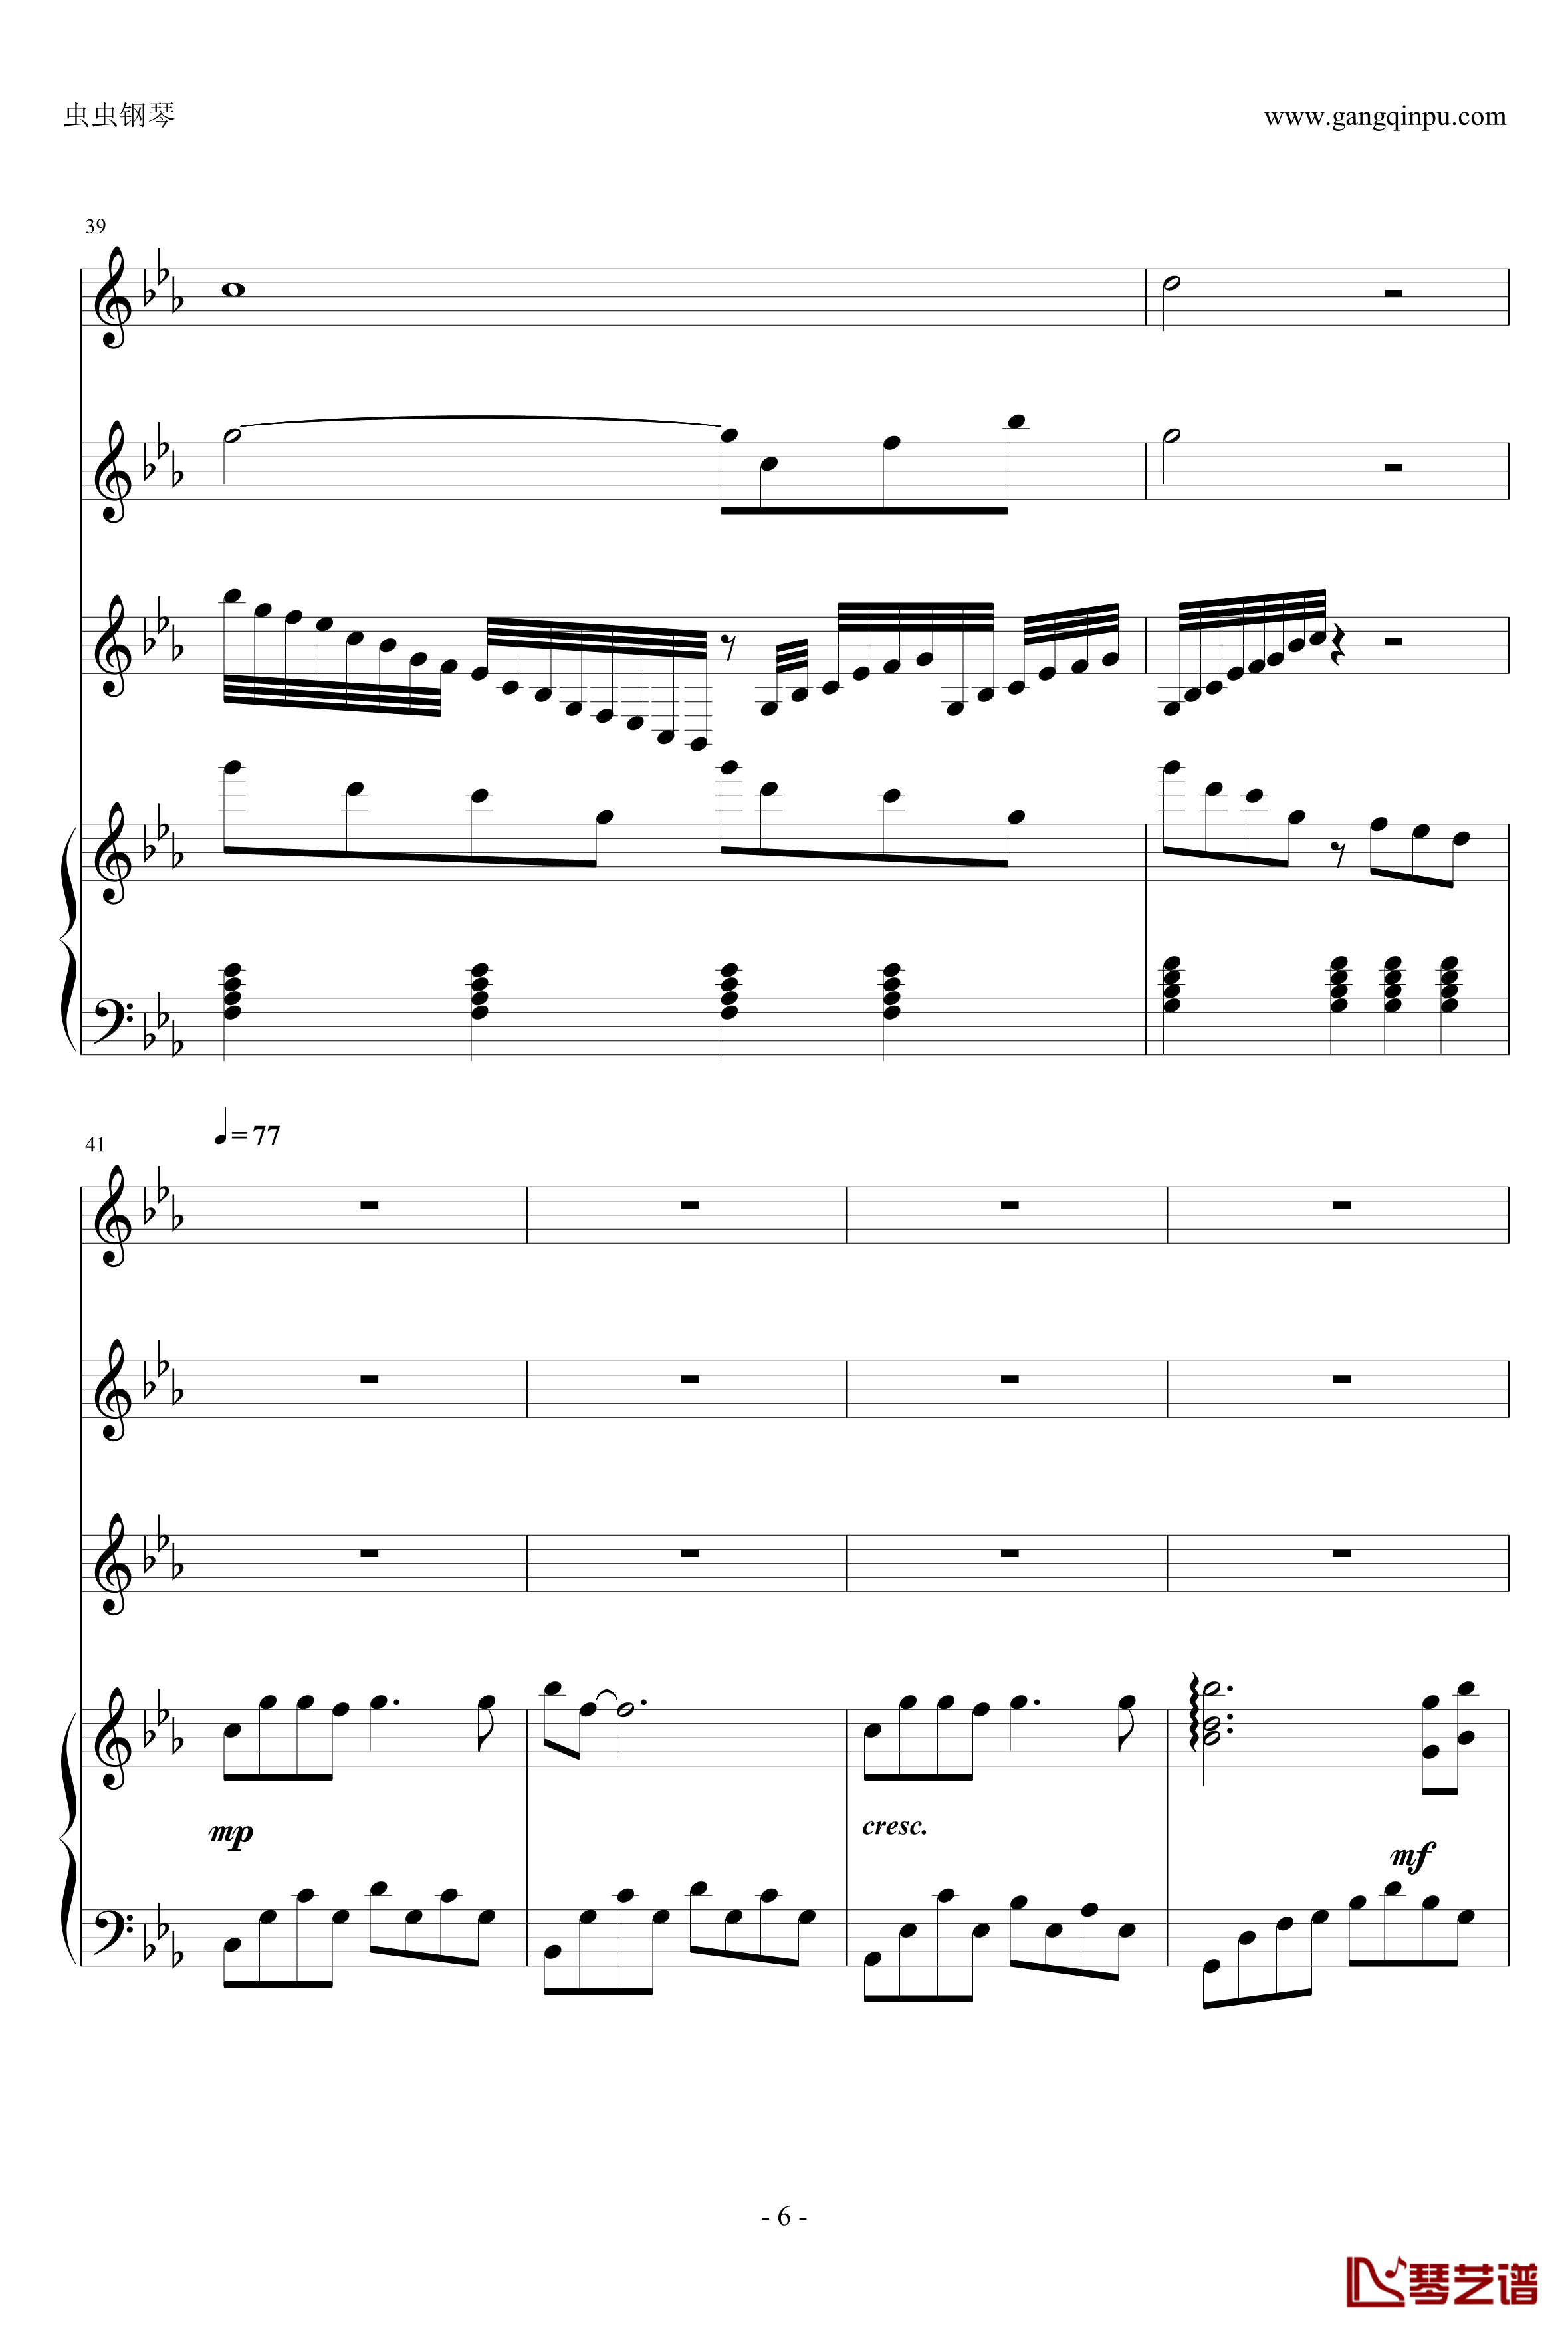 幽灵公主钢琴谱-合奏版总谱-二胡、古筝、小提琴、钢琴-久石让6